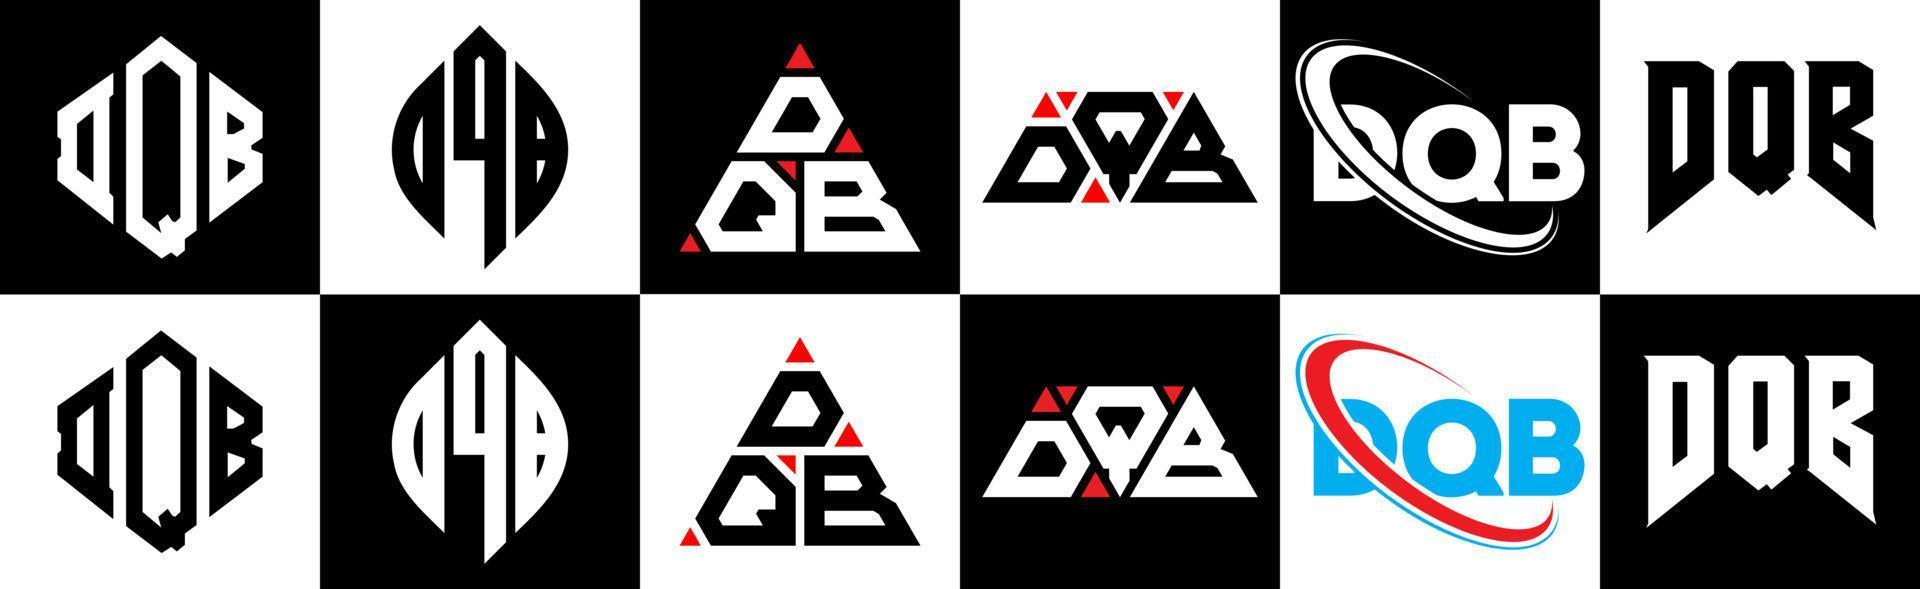 Diseño de logotipo de letra dqb en seis estilos. polígono dqb, círculo, triángulo, hexágono, estilo plano y simple con logotipo de letra de variación de color blanco y negro en una mesa de trabajo. logotipo minimalista y clásico de dqb vector